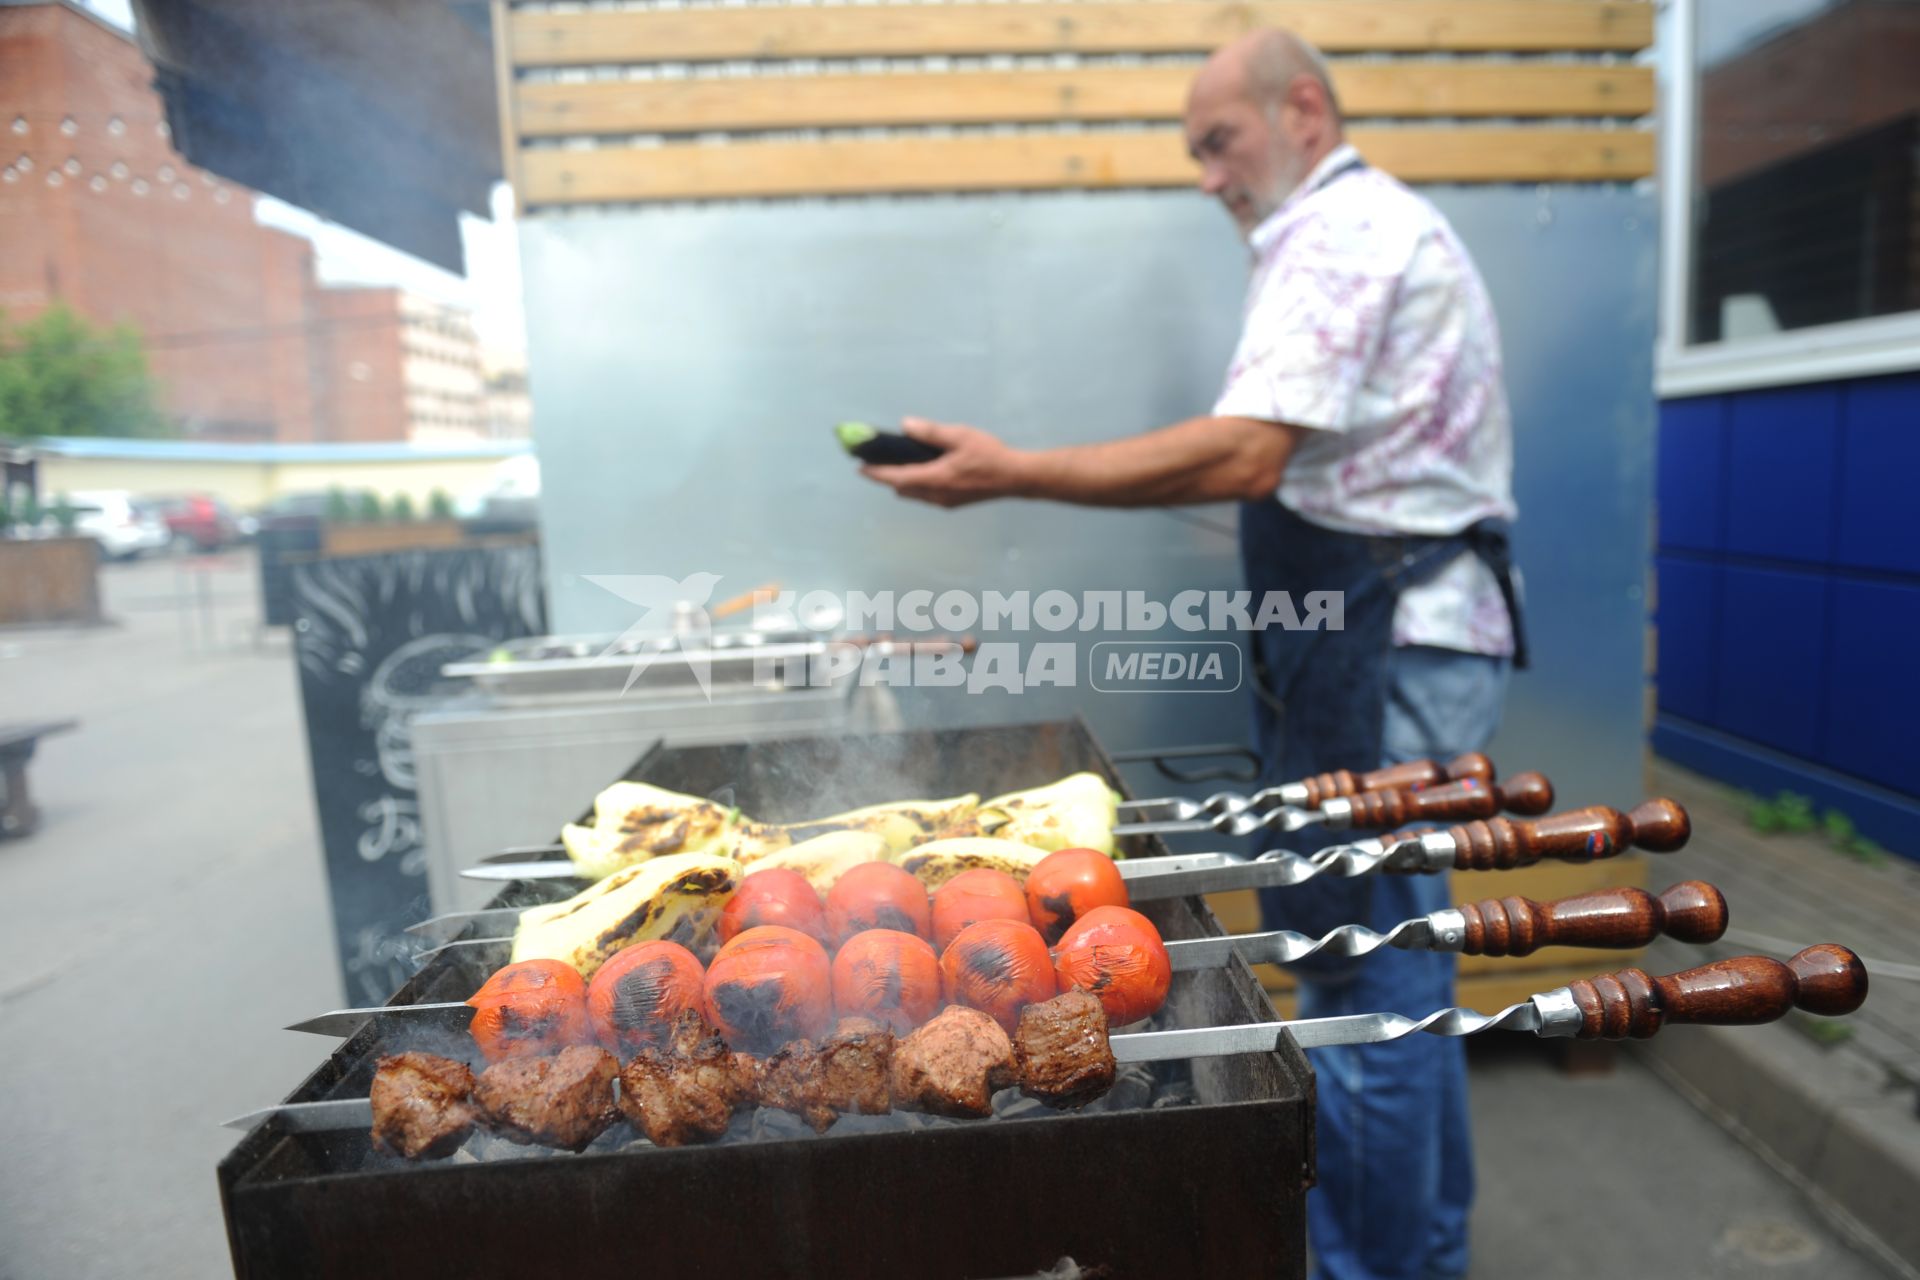 Санкт-Петербург. Южный рынок. Шашлычник жарит мясо и овощи на мангале.